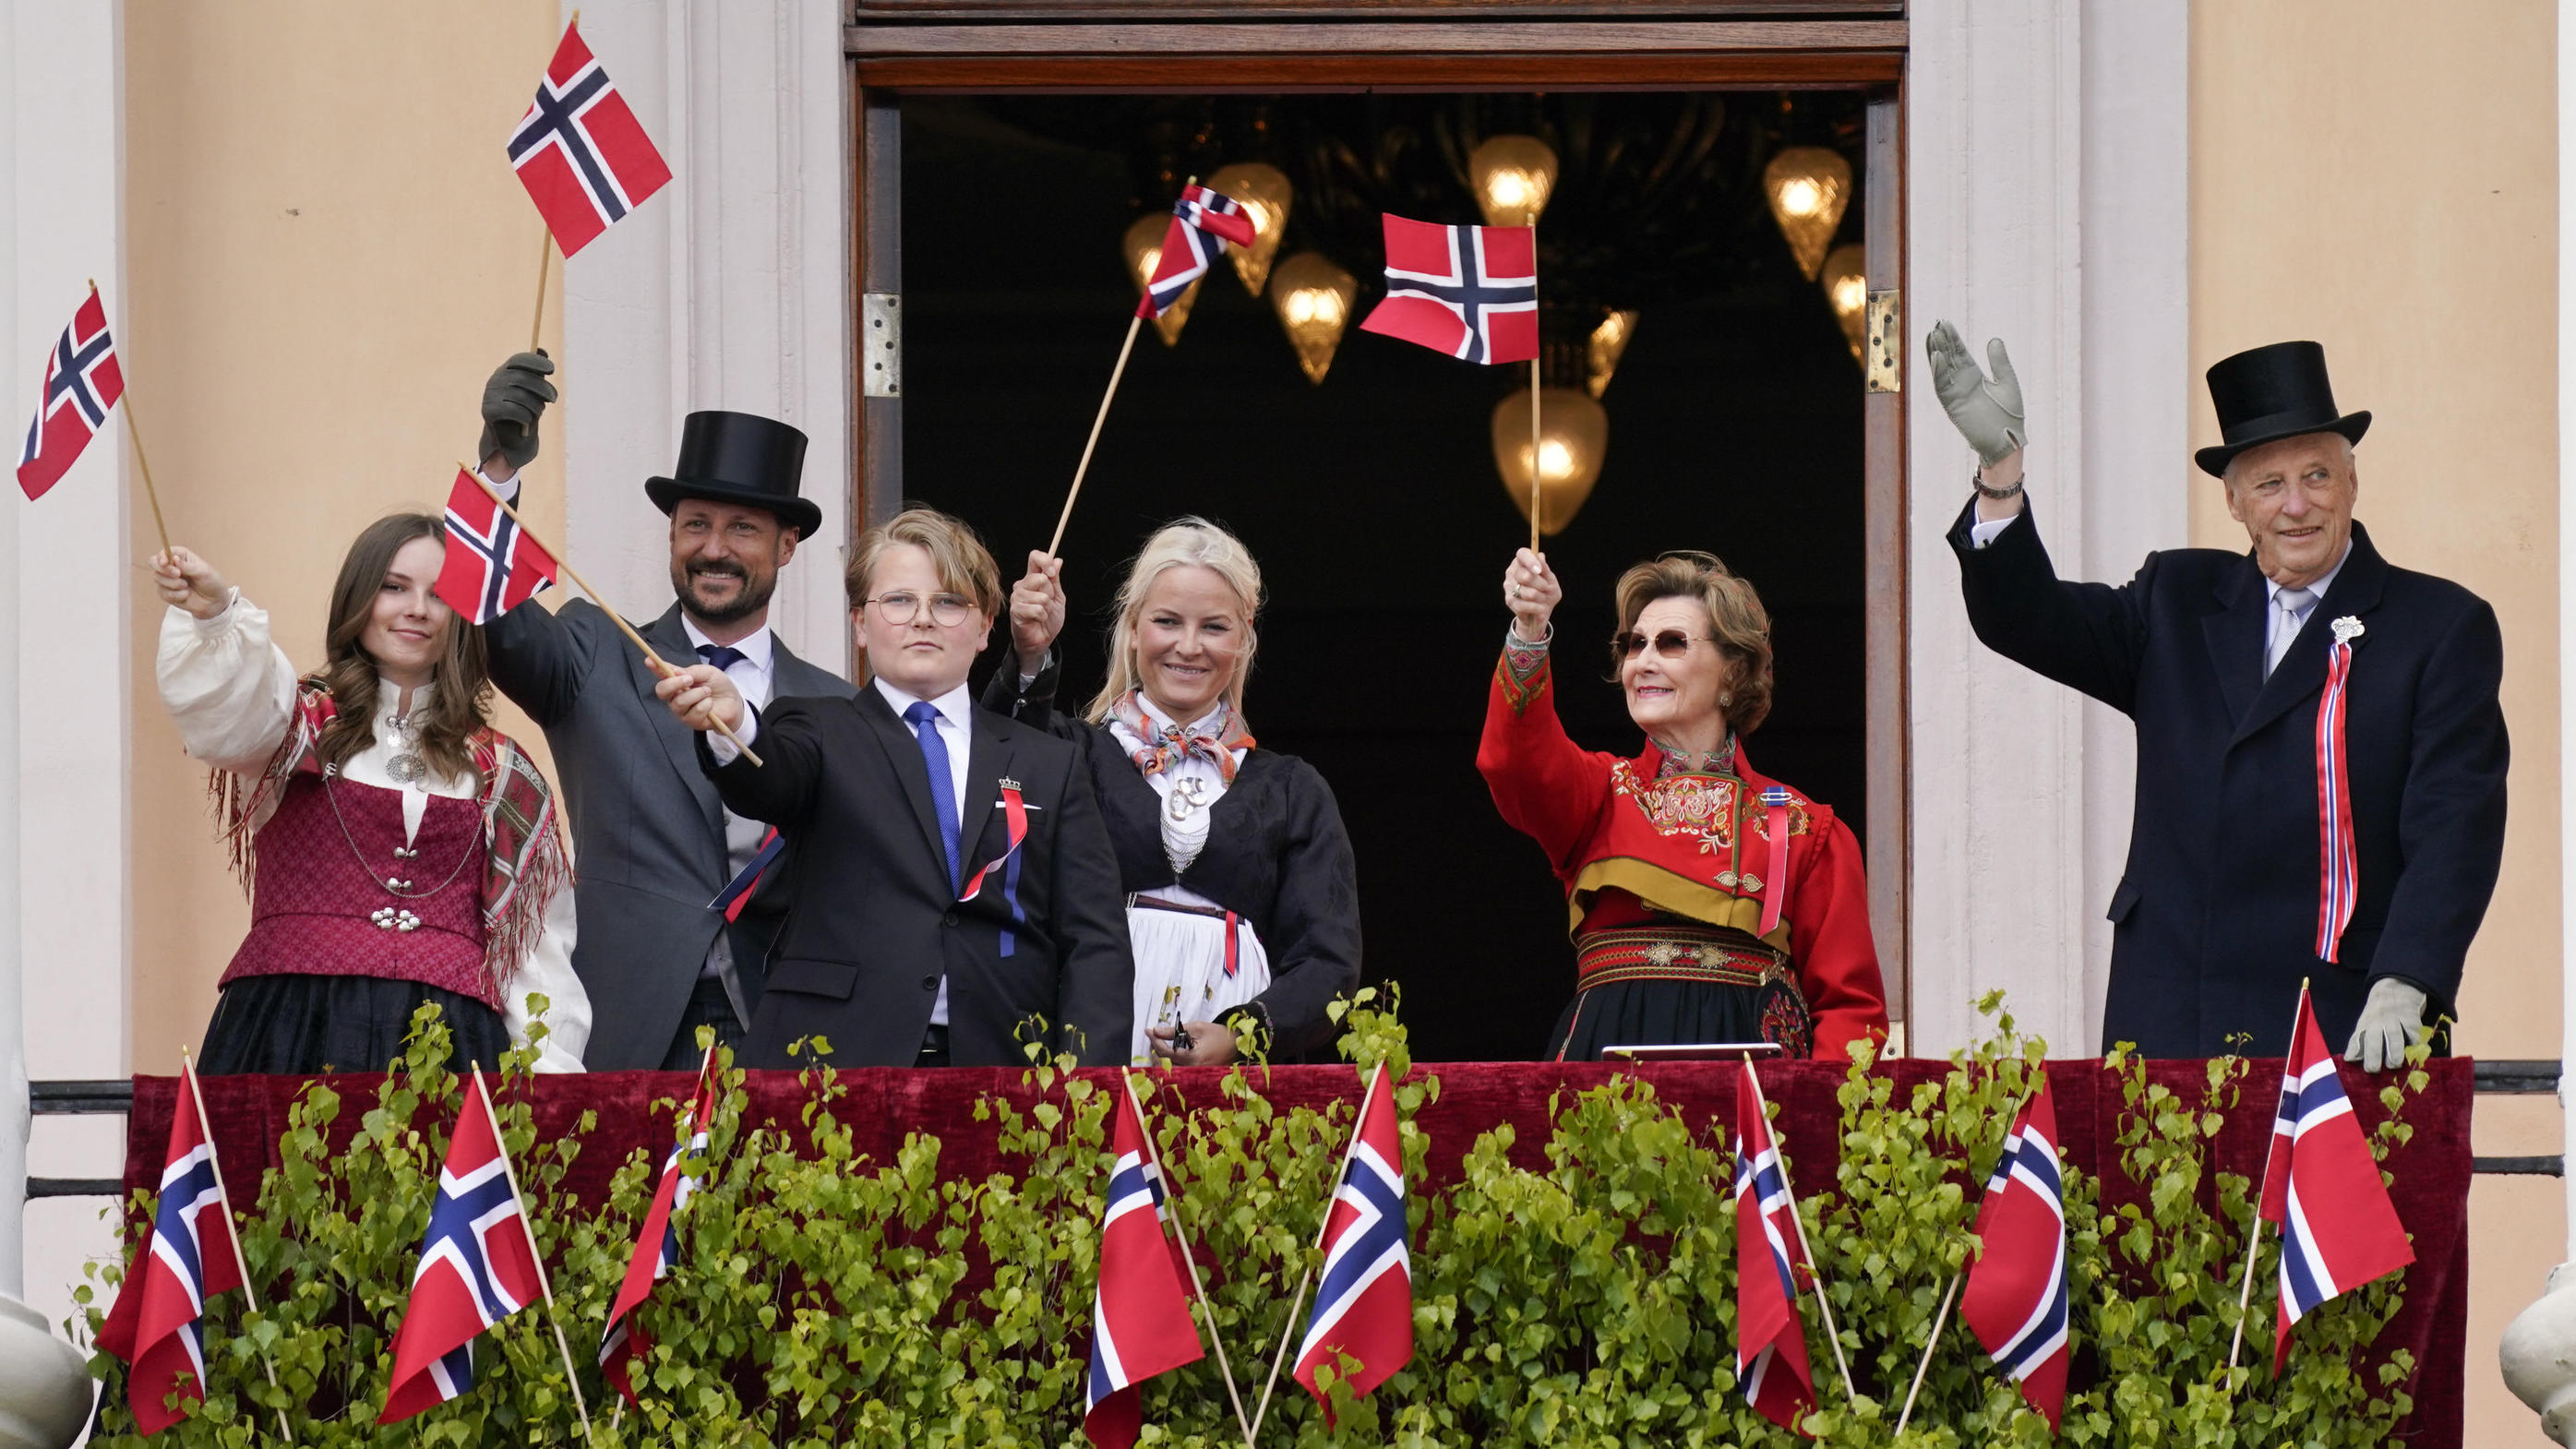 König Harald V. von Norwegen (r-l), Königin Sonja, Kronprinzessin Mette-Marit, Prinz Sverre Magnus, Kronprinz Haakon, und Prinzessin Ingrid Alexandra winken während der Feierlichkeiten zum Verfassungstag